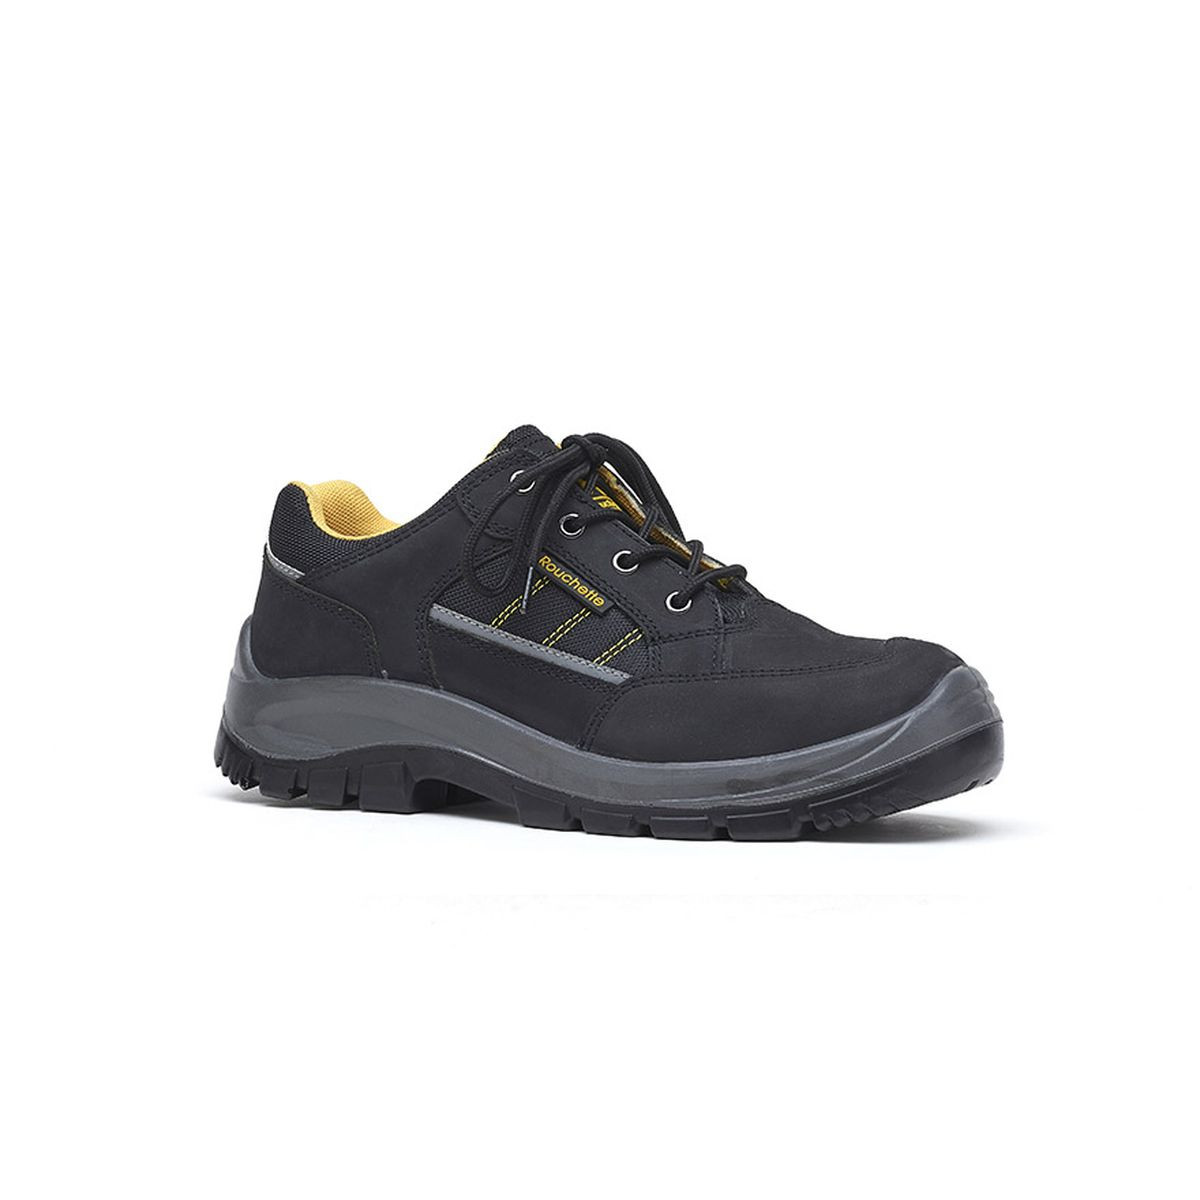 Chaussures de sécurité BOSTON noir et jaune T41